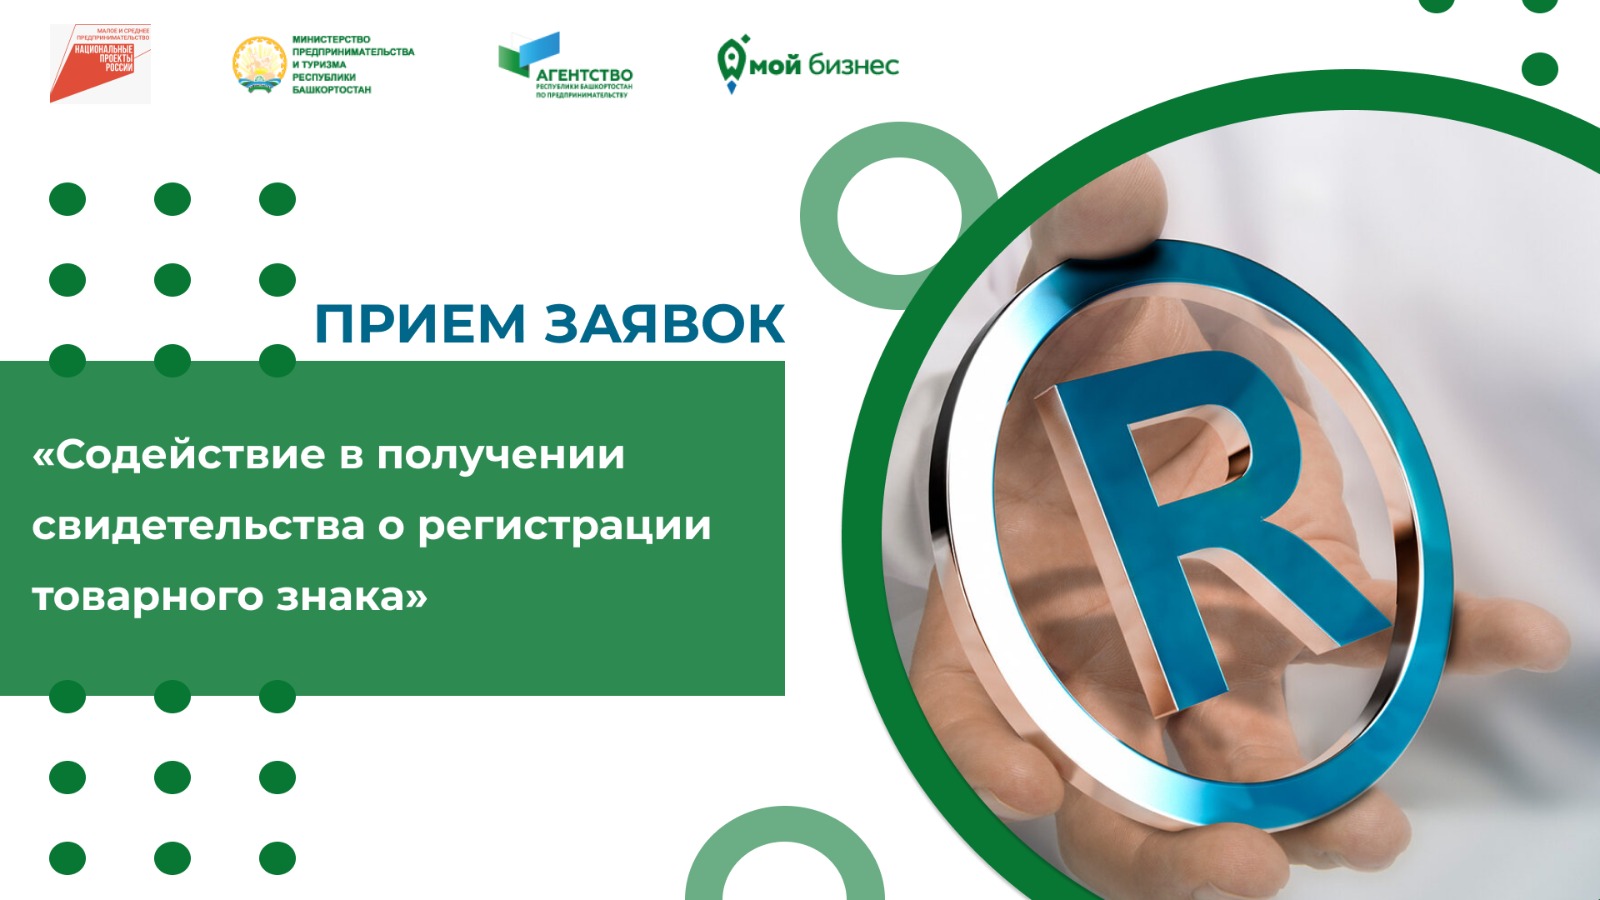 Предприниматели Башкортостана!  Стартовал прием заявок на содействие в получении свидетельства в регистрации товарного знака